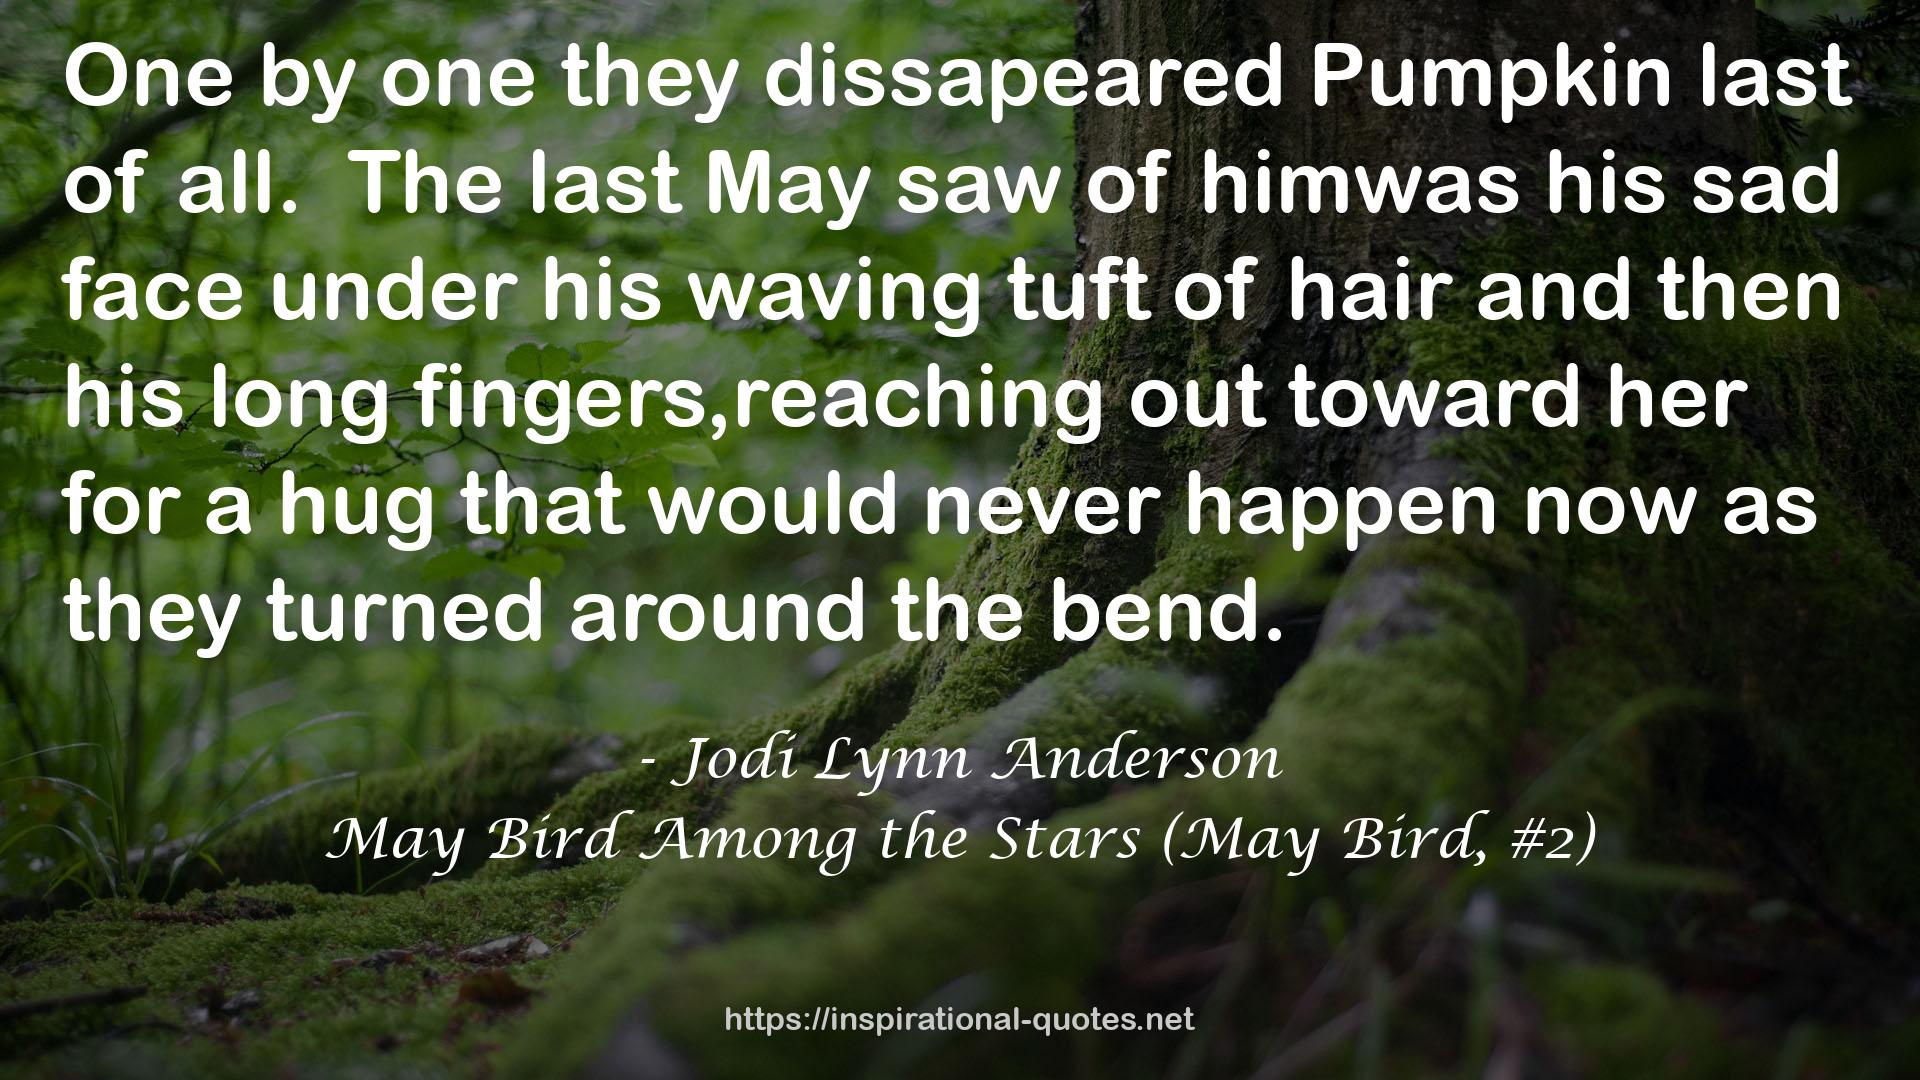 May Bird Among the Stars (May Bird, #2) QUOTES